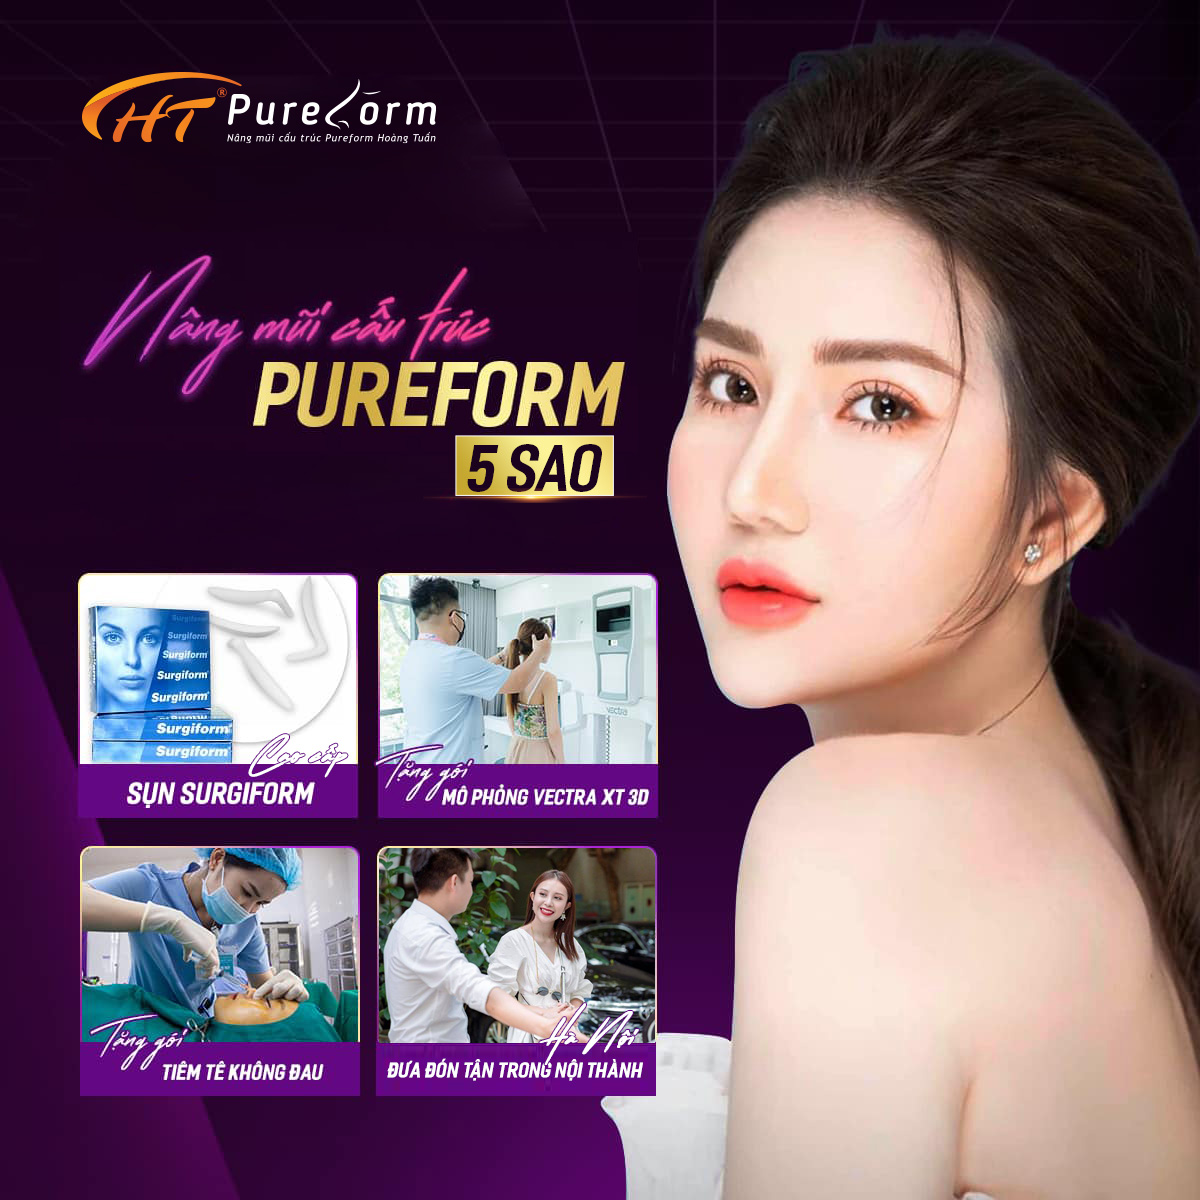 Nâng mũi cấu trúc Pureform Hoàng Tuấn đã được hơn 10,000 khách hàng tin tưởng sử dụng.